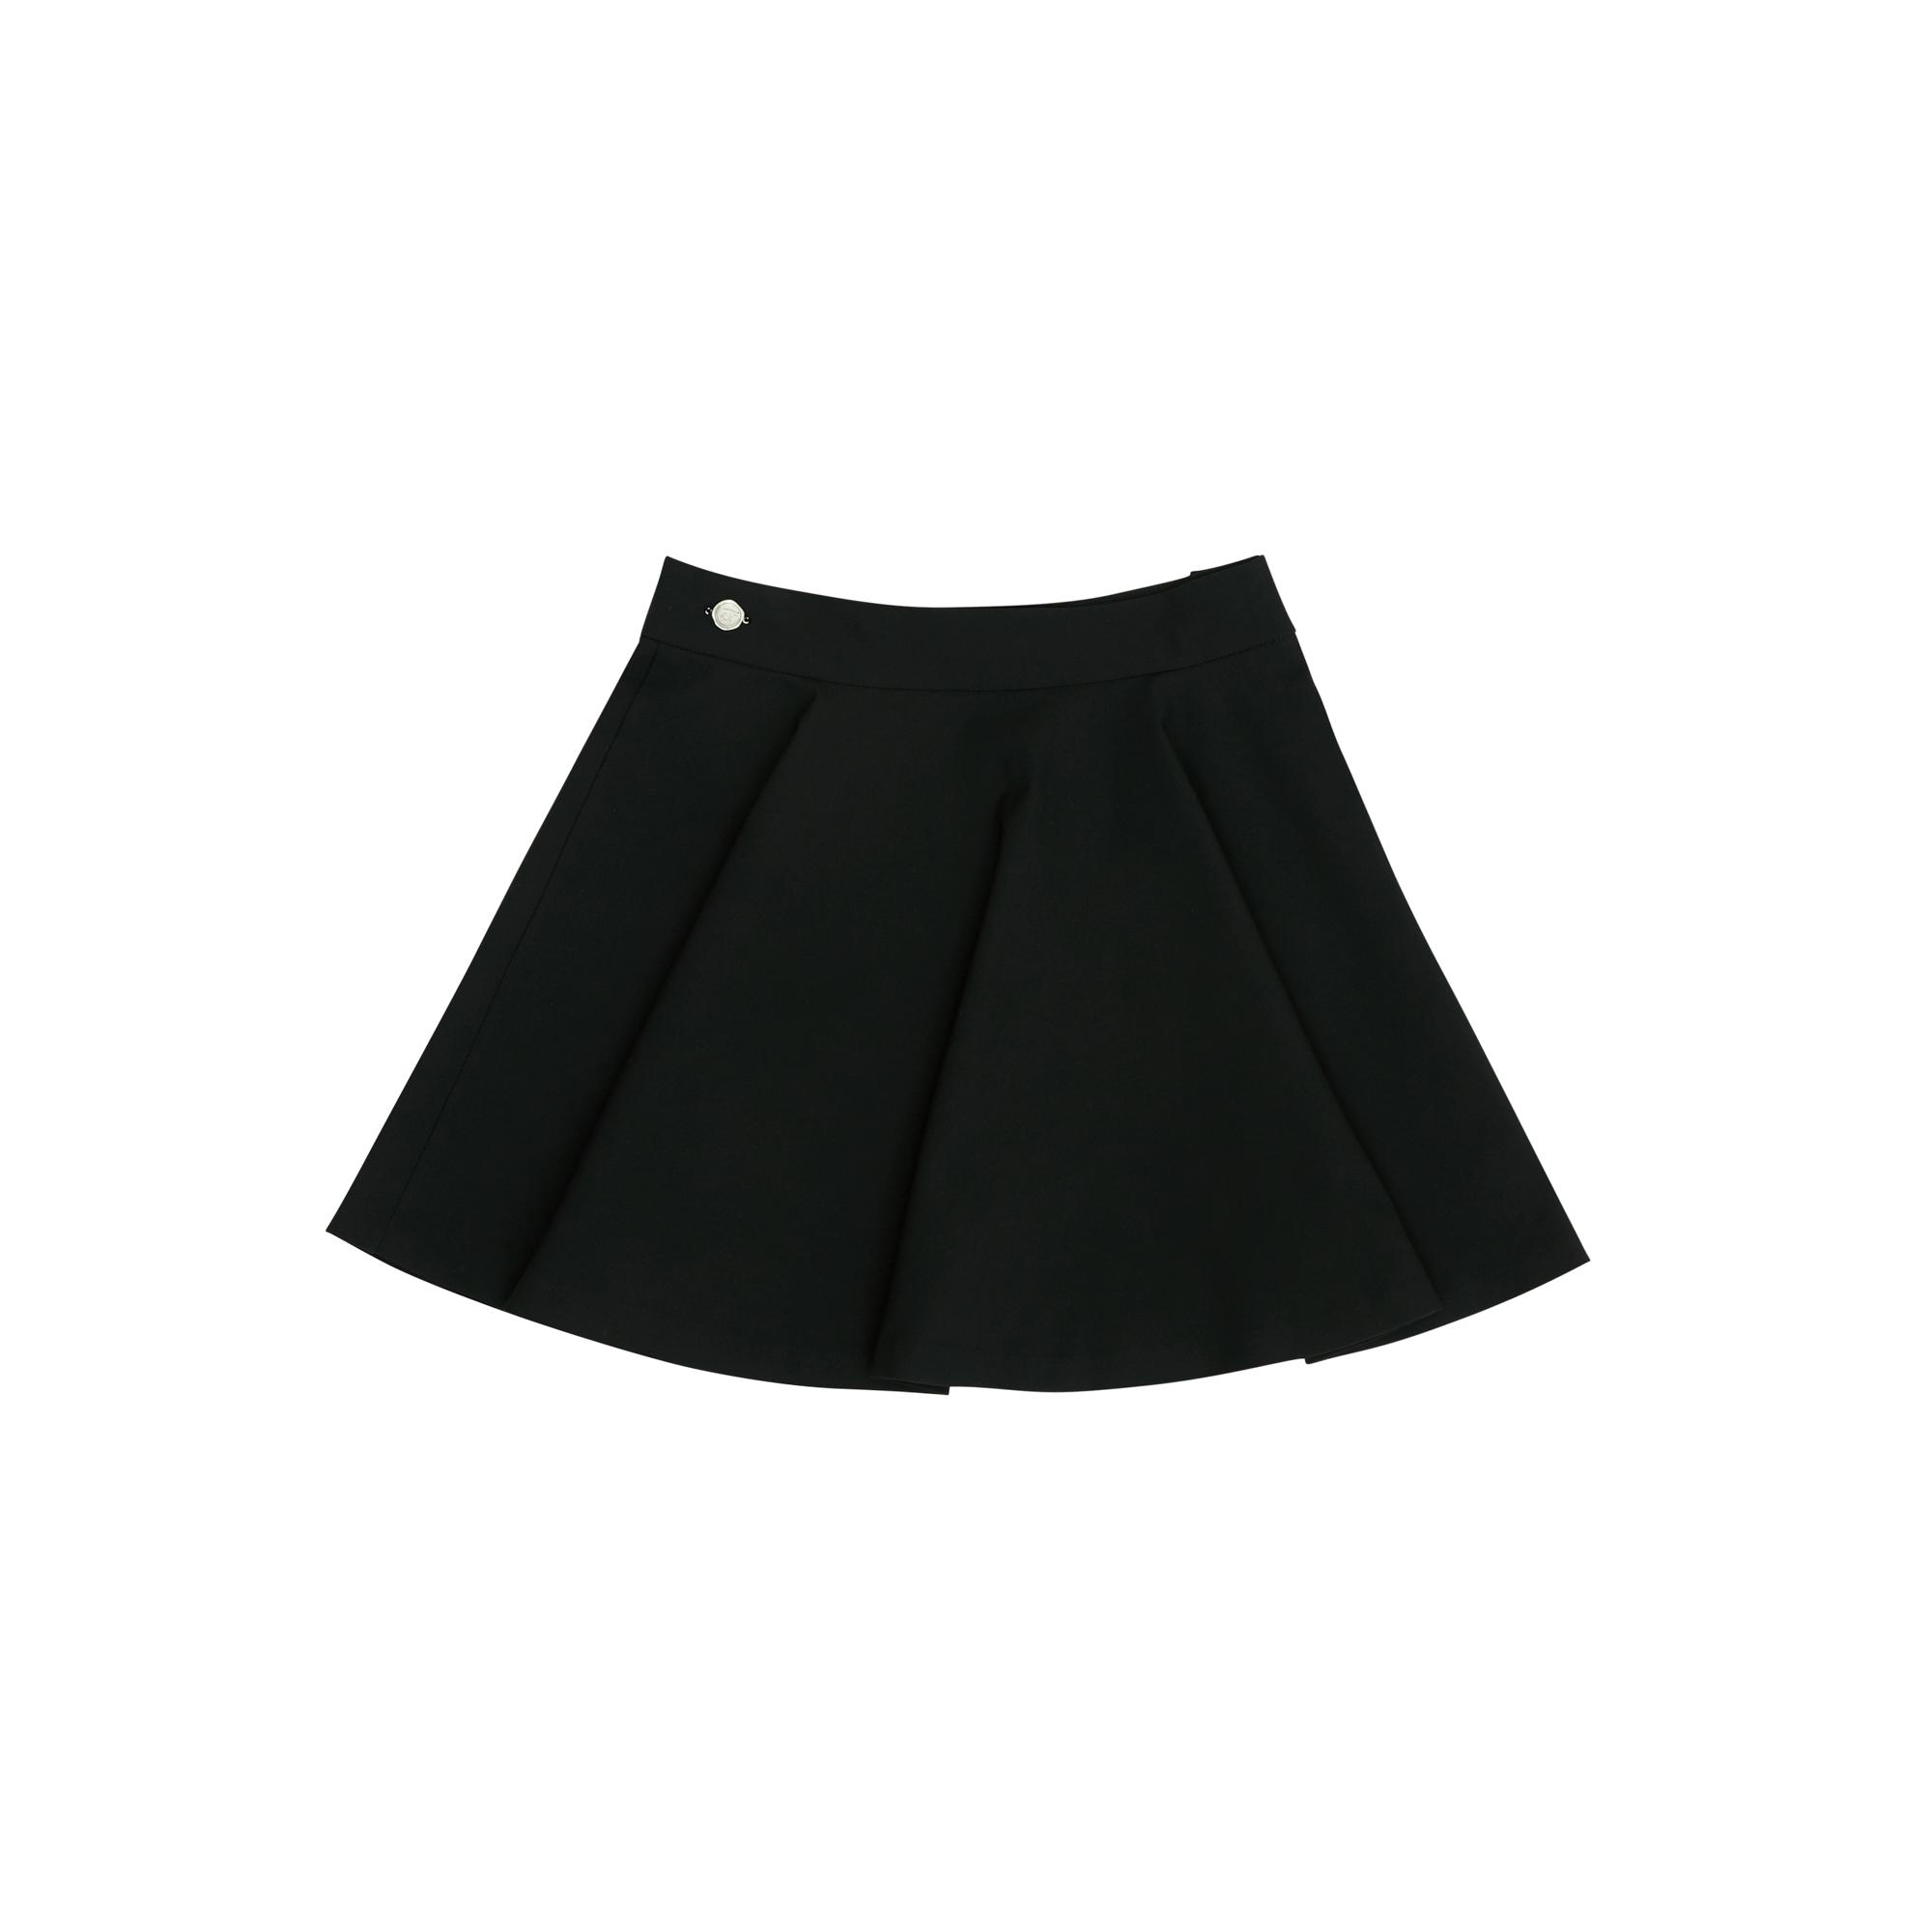 Waved edge skirt